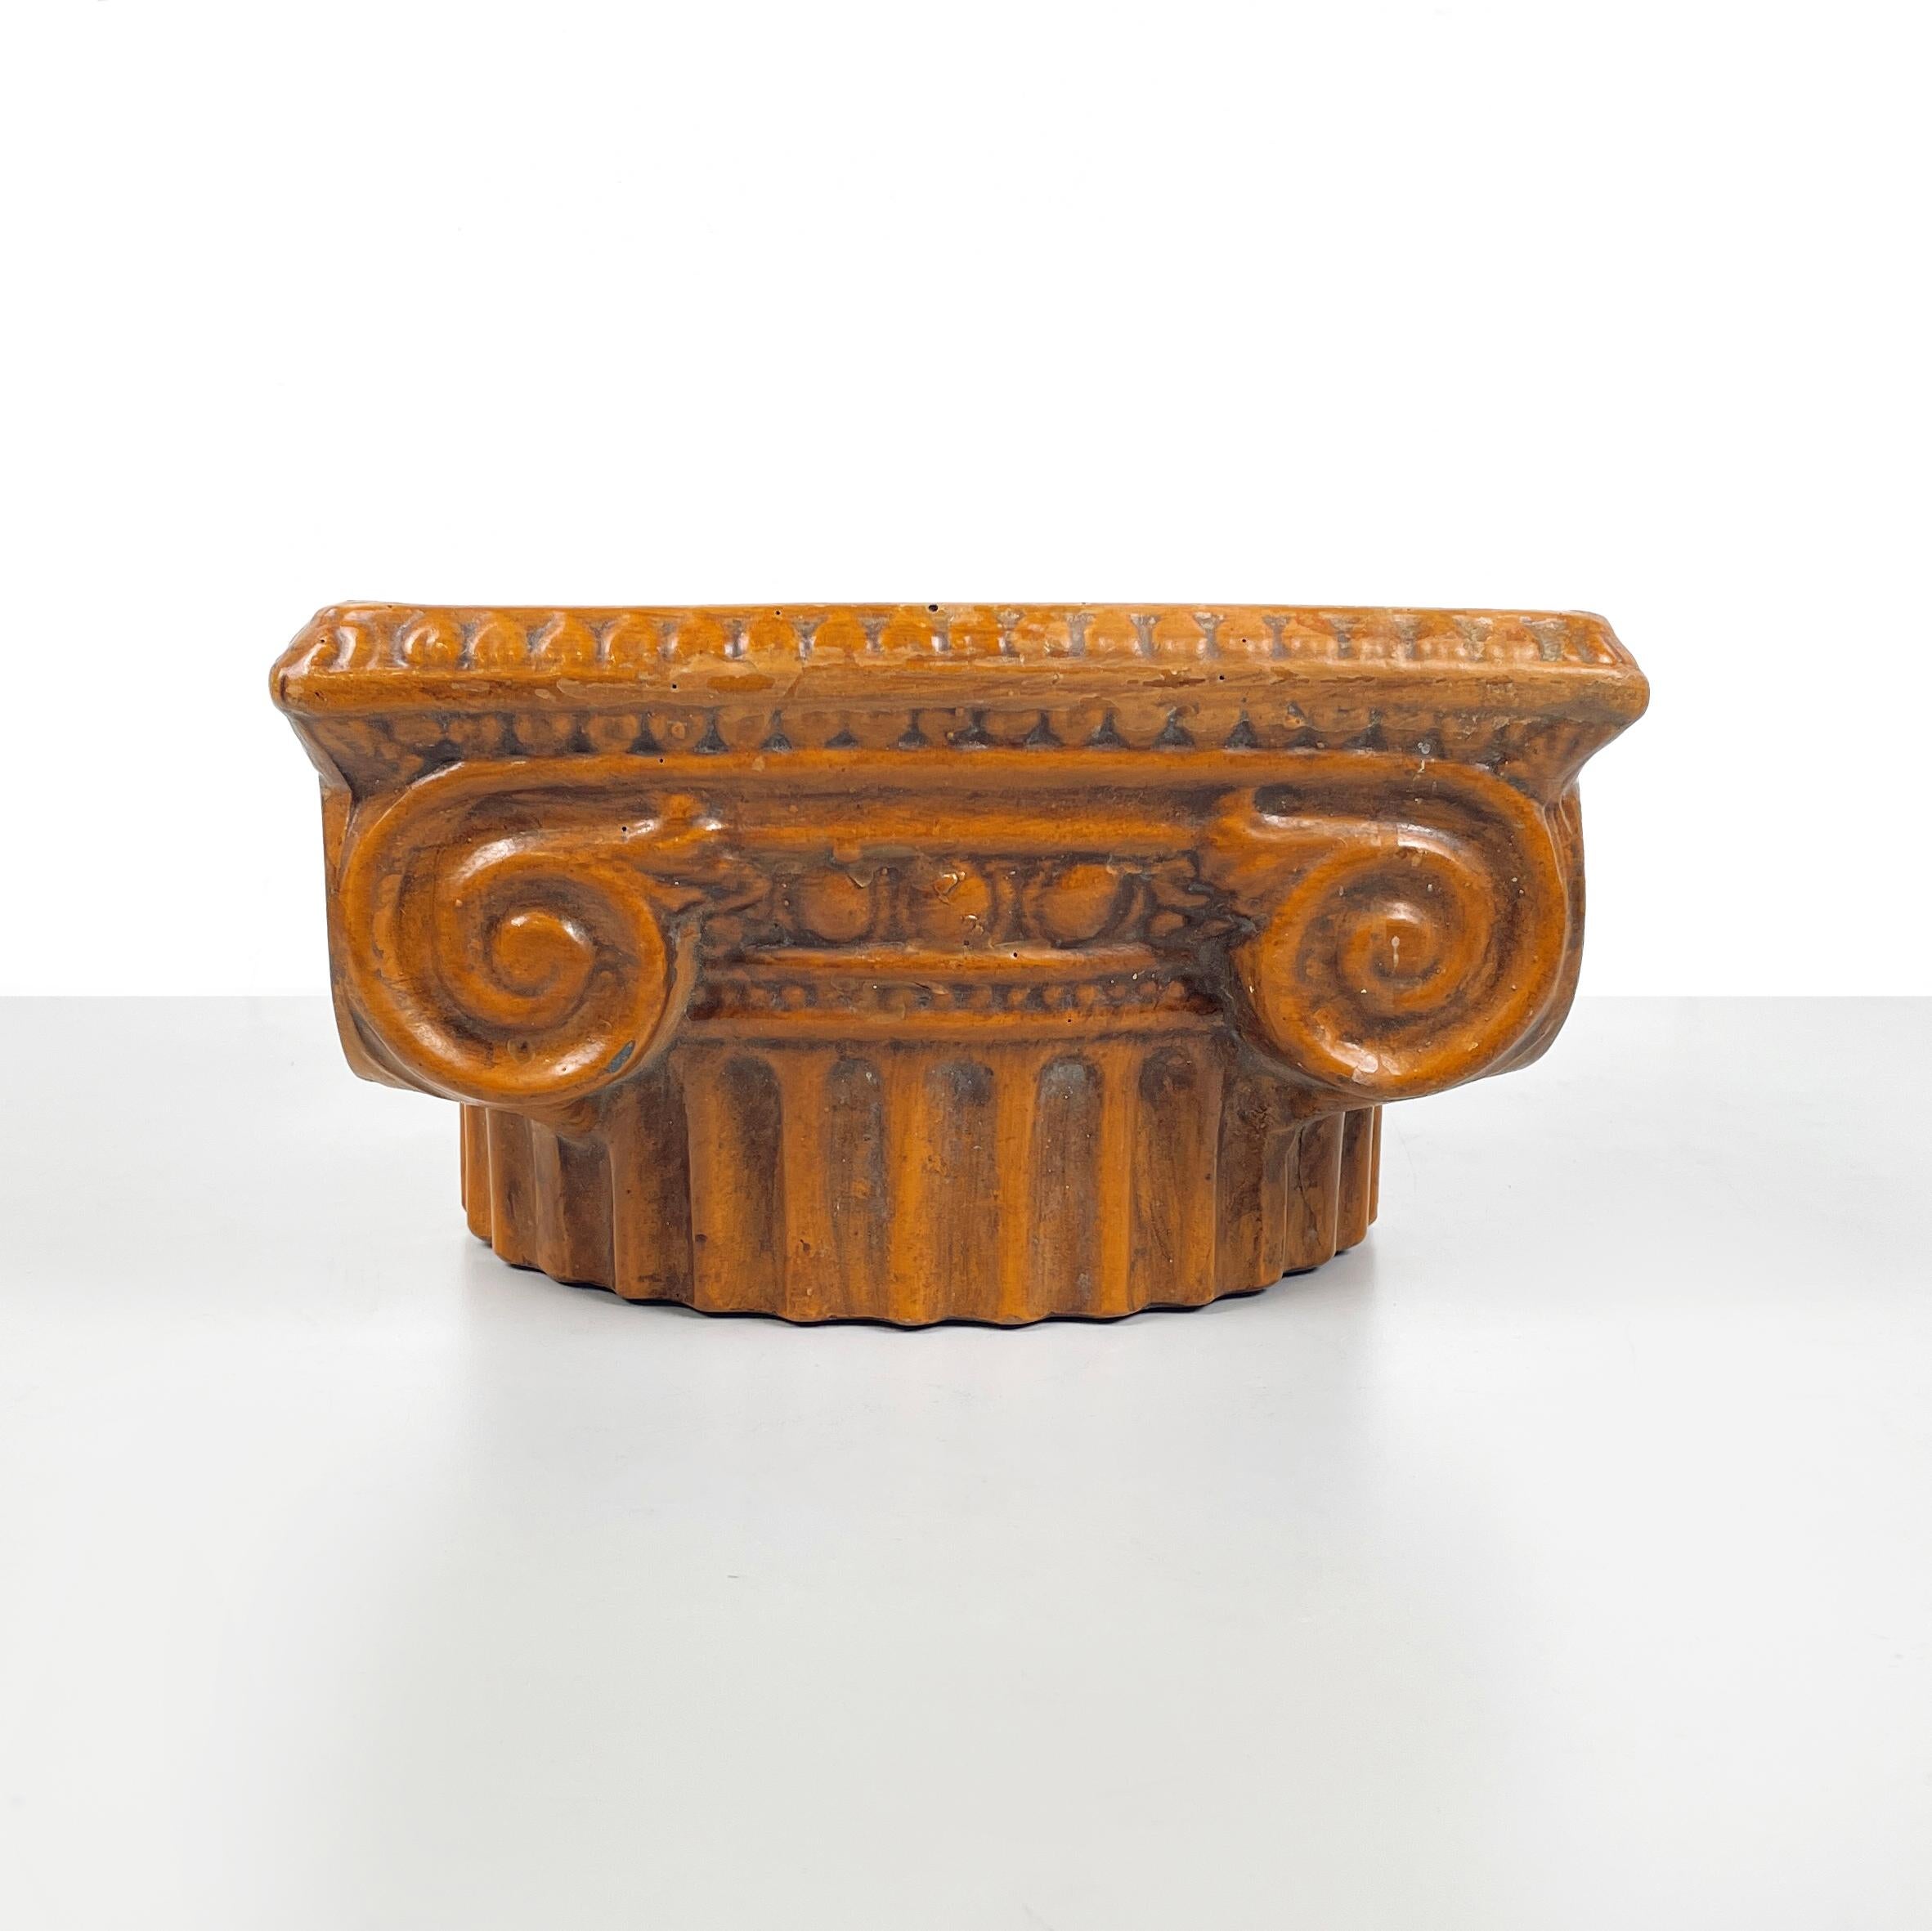 Italienische moderne ionische Kapitellschale aus brauner Keramik, 1980er Jahre
Eleganter runder Sockel aus braun lackierter Keramik im Vintage-Stil. Die Schale hat die Form eines ionischen Kapitells.
Sie stammt aus dem Jahr 1980.
Guter Zustand,